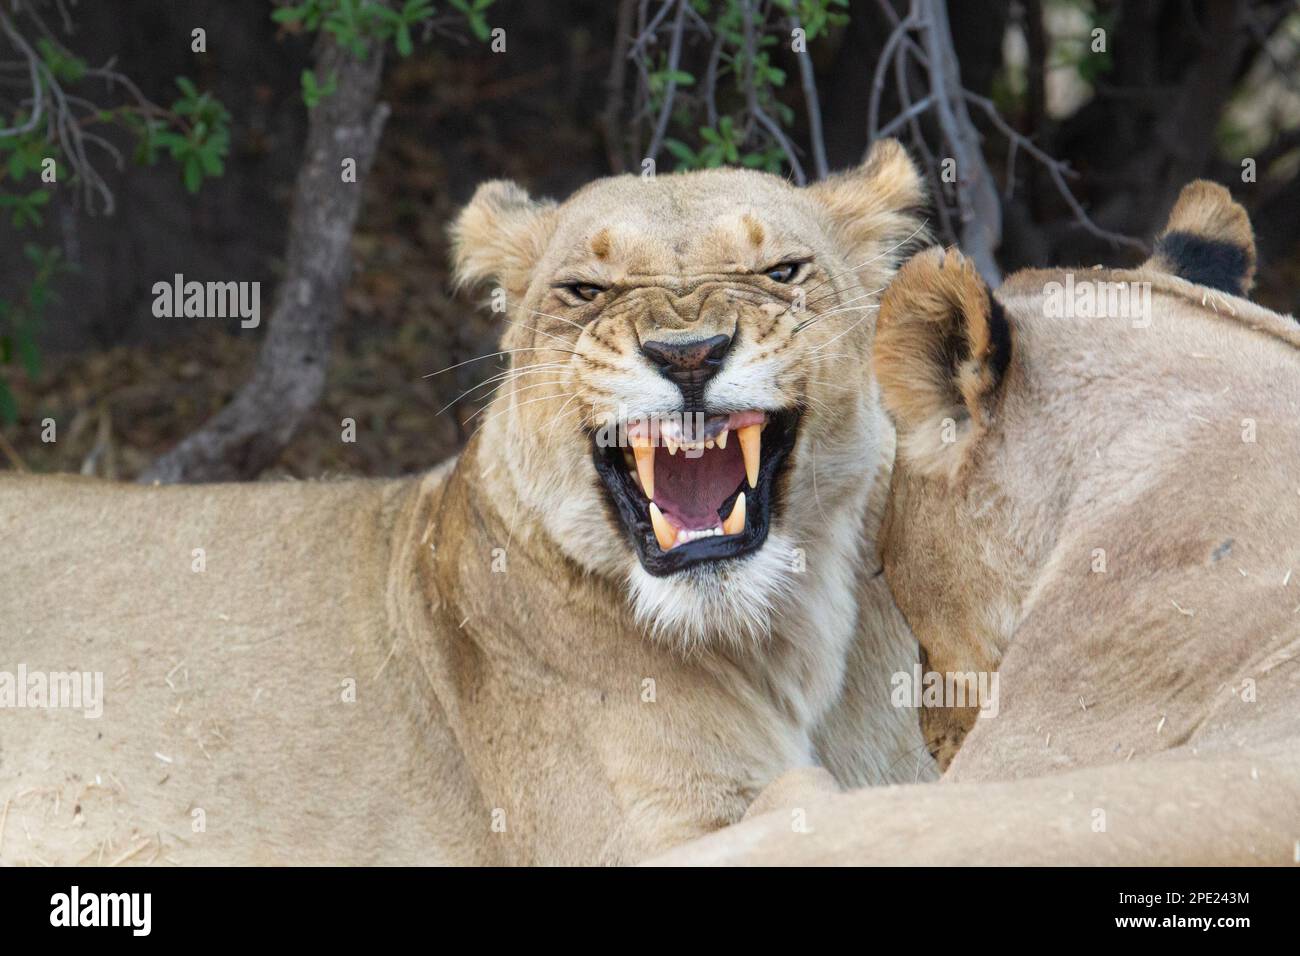 Portrait de Lioness, Panthera leo, grogne à l'appareil photo. Portrait de son visage, tête devant. Comportement agressif. Okavango Delta, Botswana, Afrique Banque D'Images